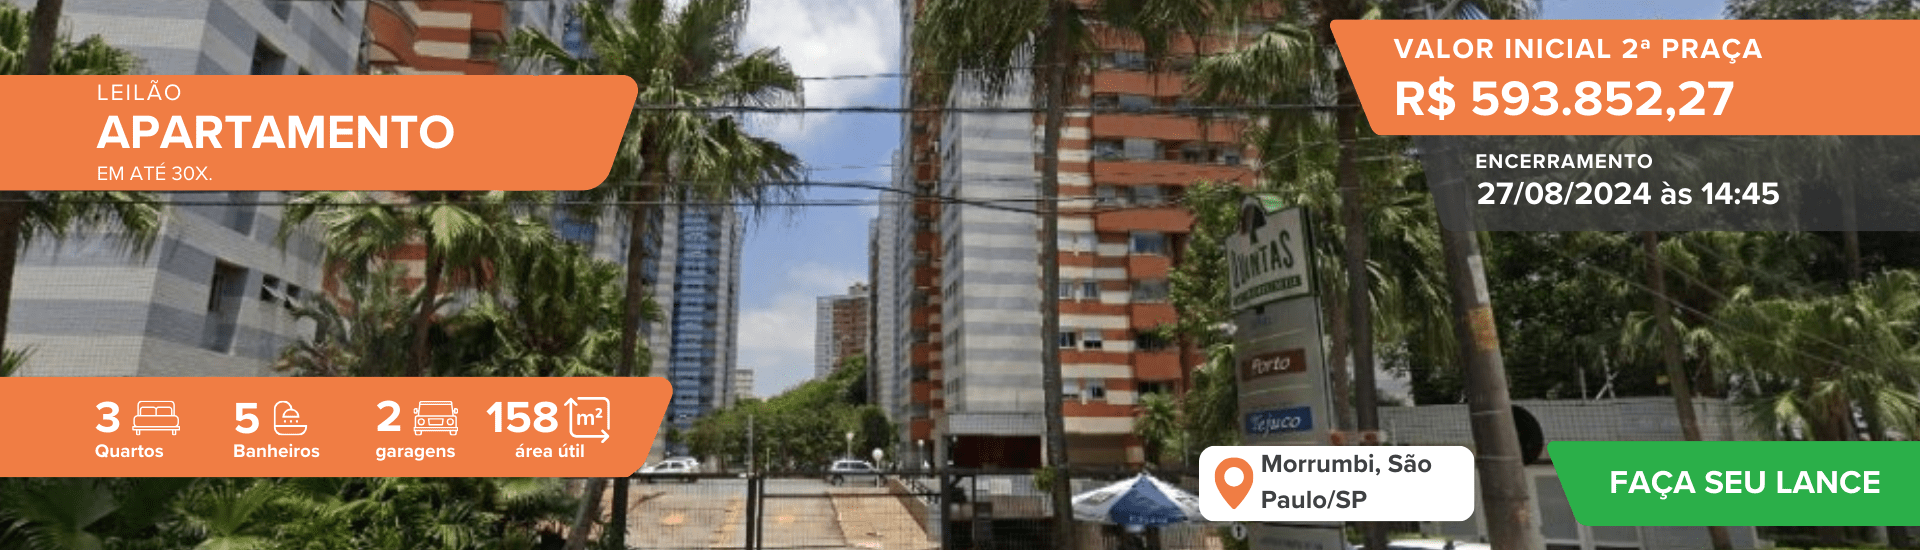 Apartamento, 158m², Condomínio Residencial Quintas do Morrumbi, São Paulo/SP